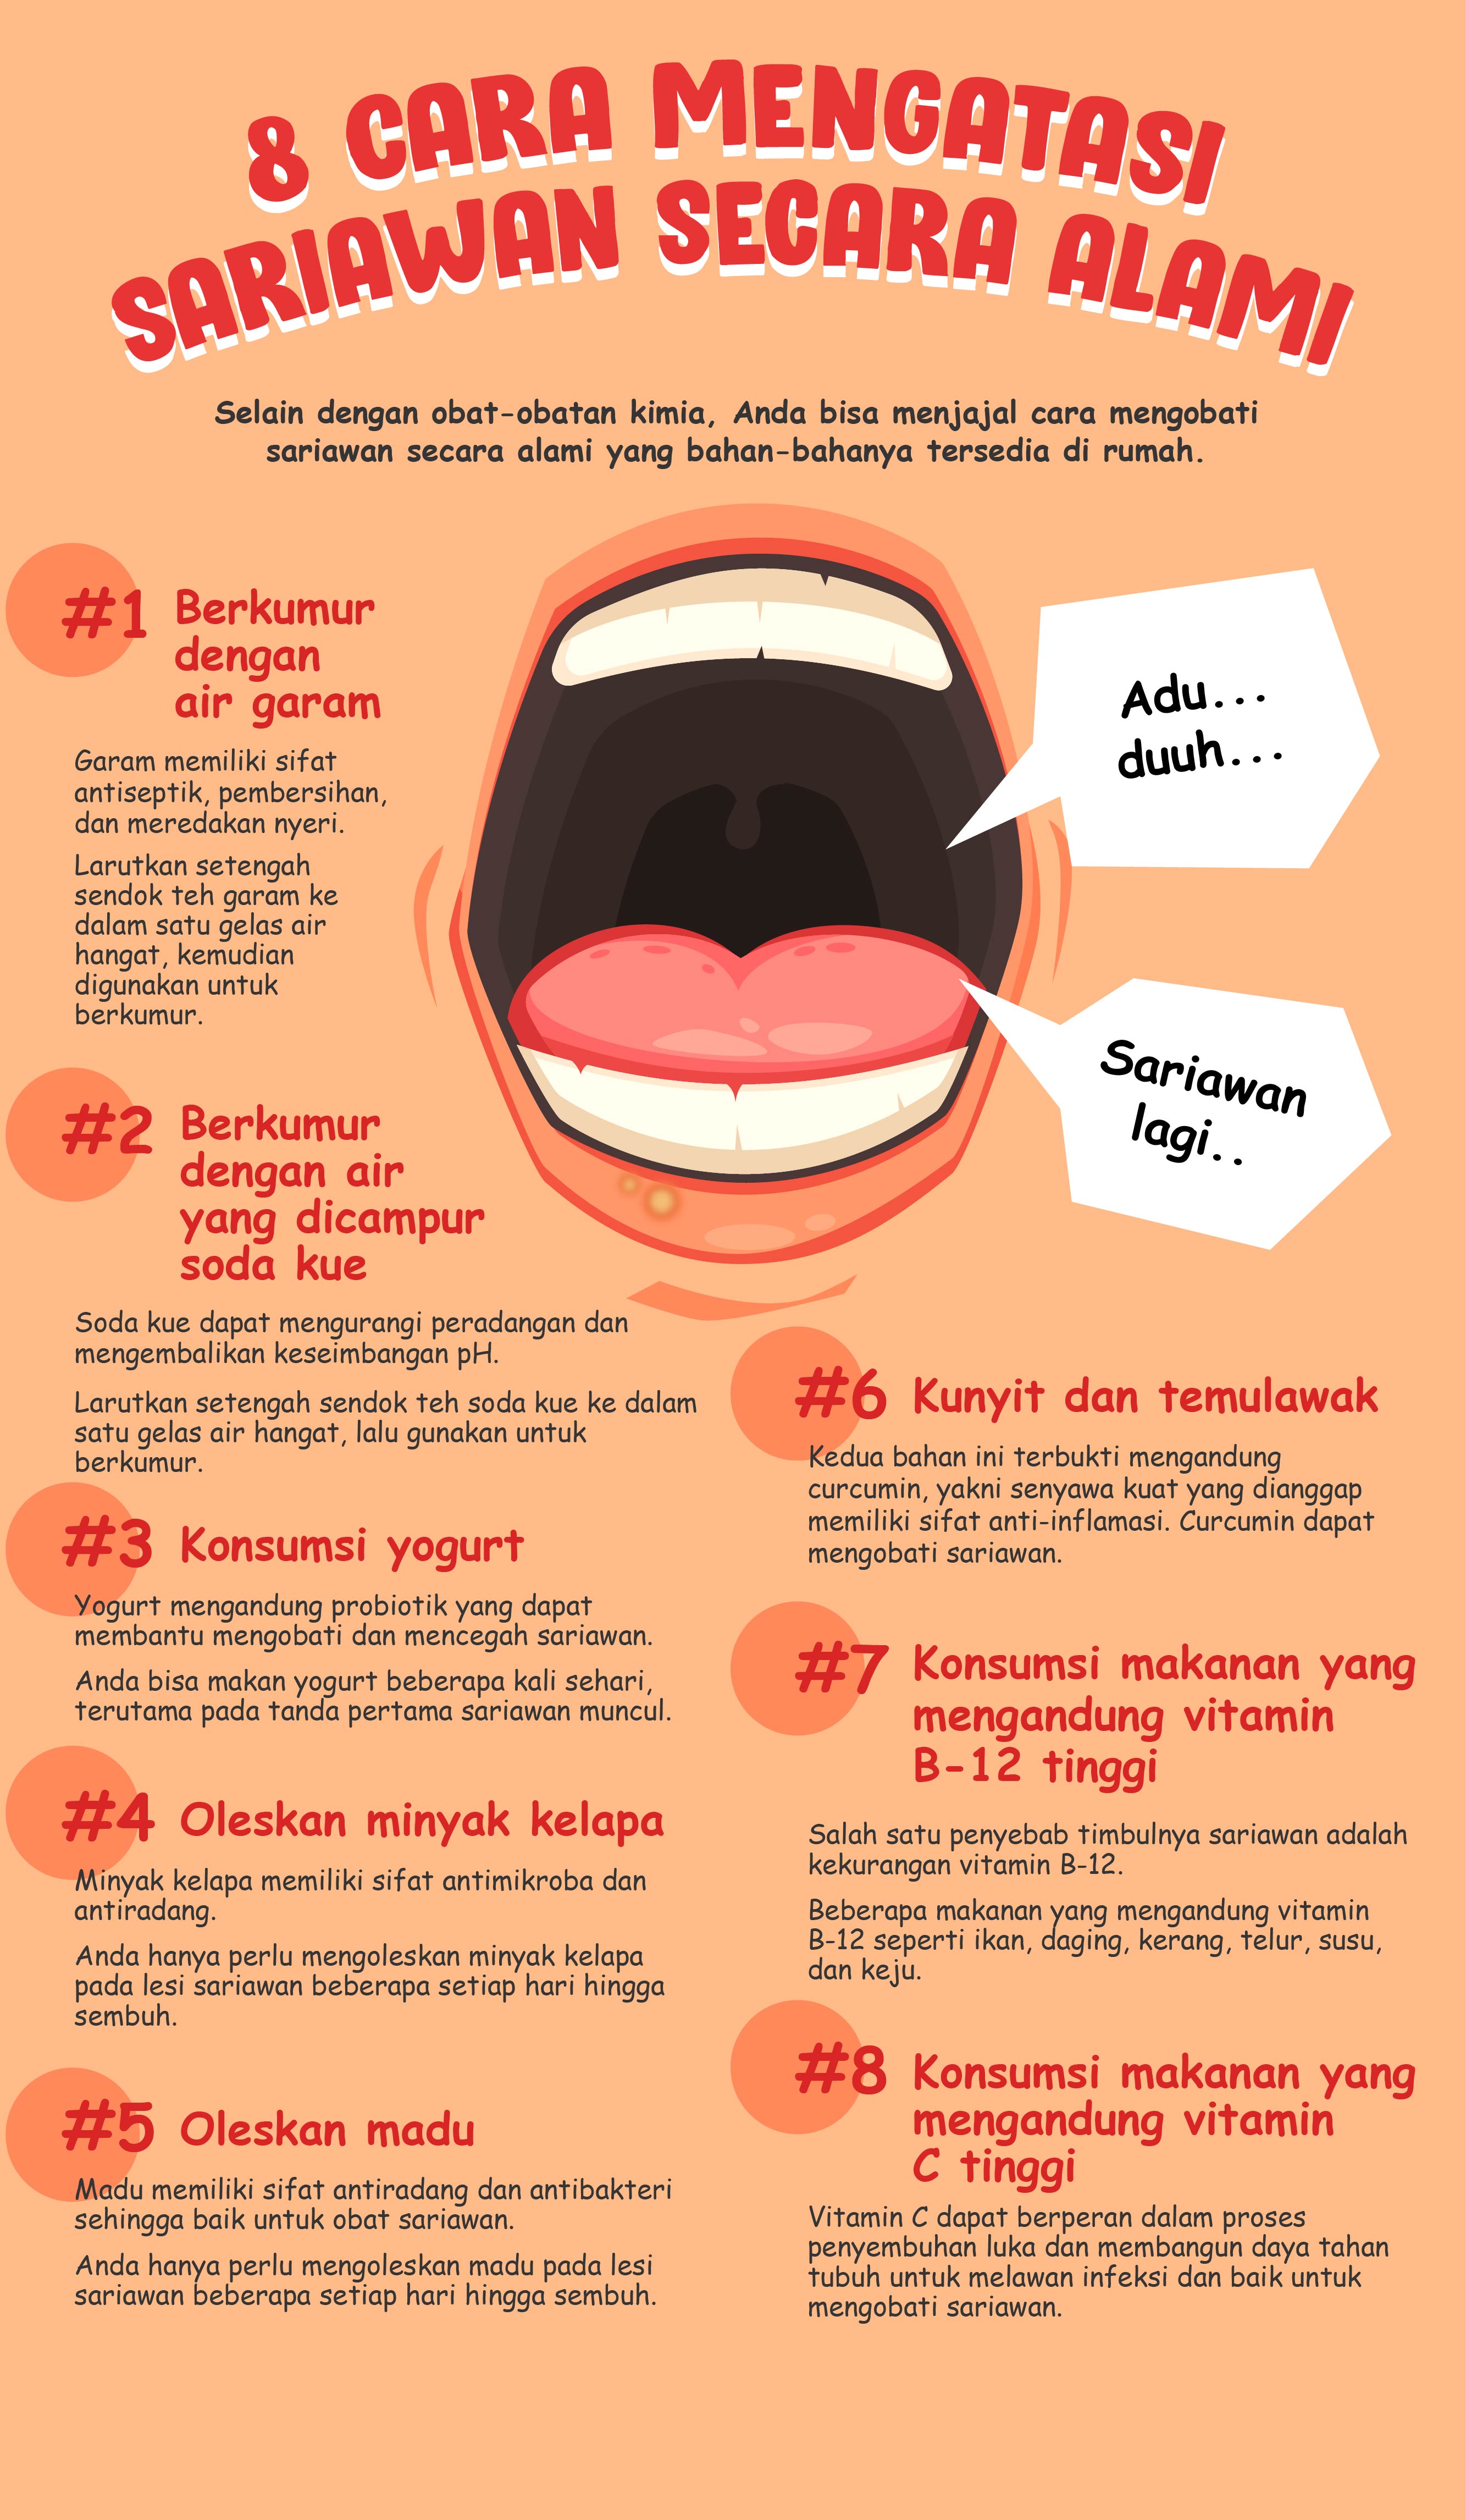 KOMPAS.com/Akbar Bhayu Tamtomo Infografik: 8 Cara mengatasi sariawan secara alami